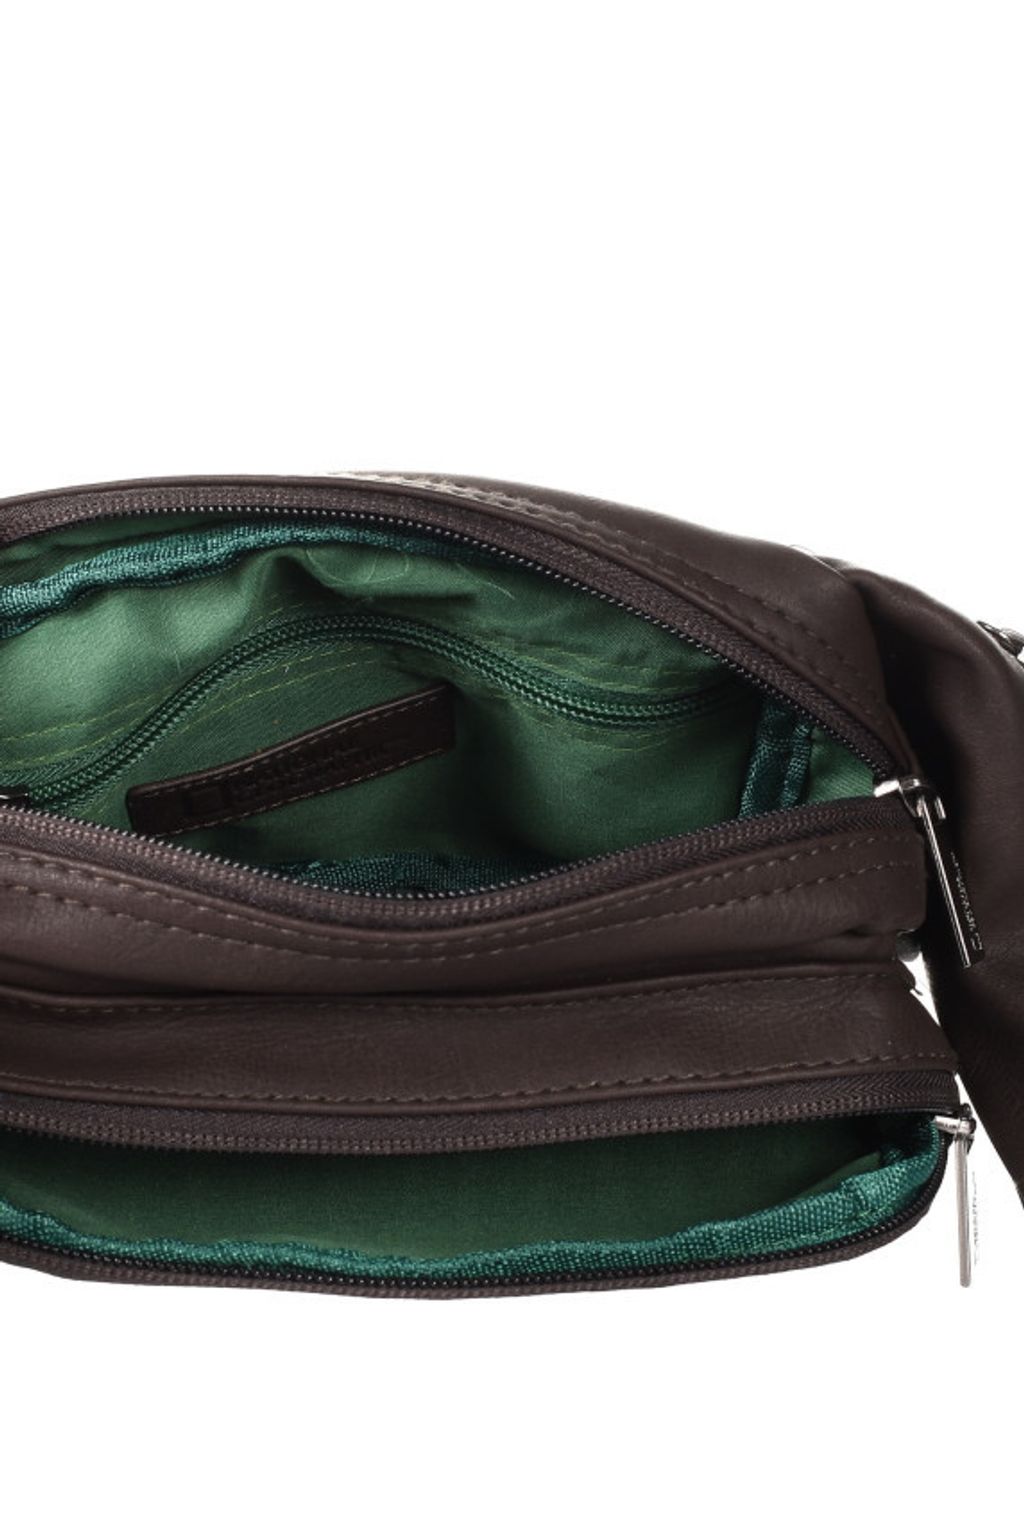 national-geographic-peak-waist-bag-n13801-33-inside.jpg